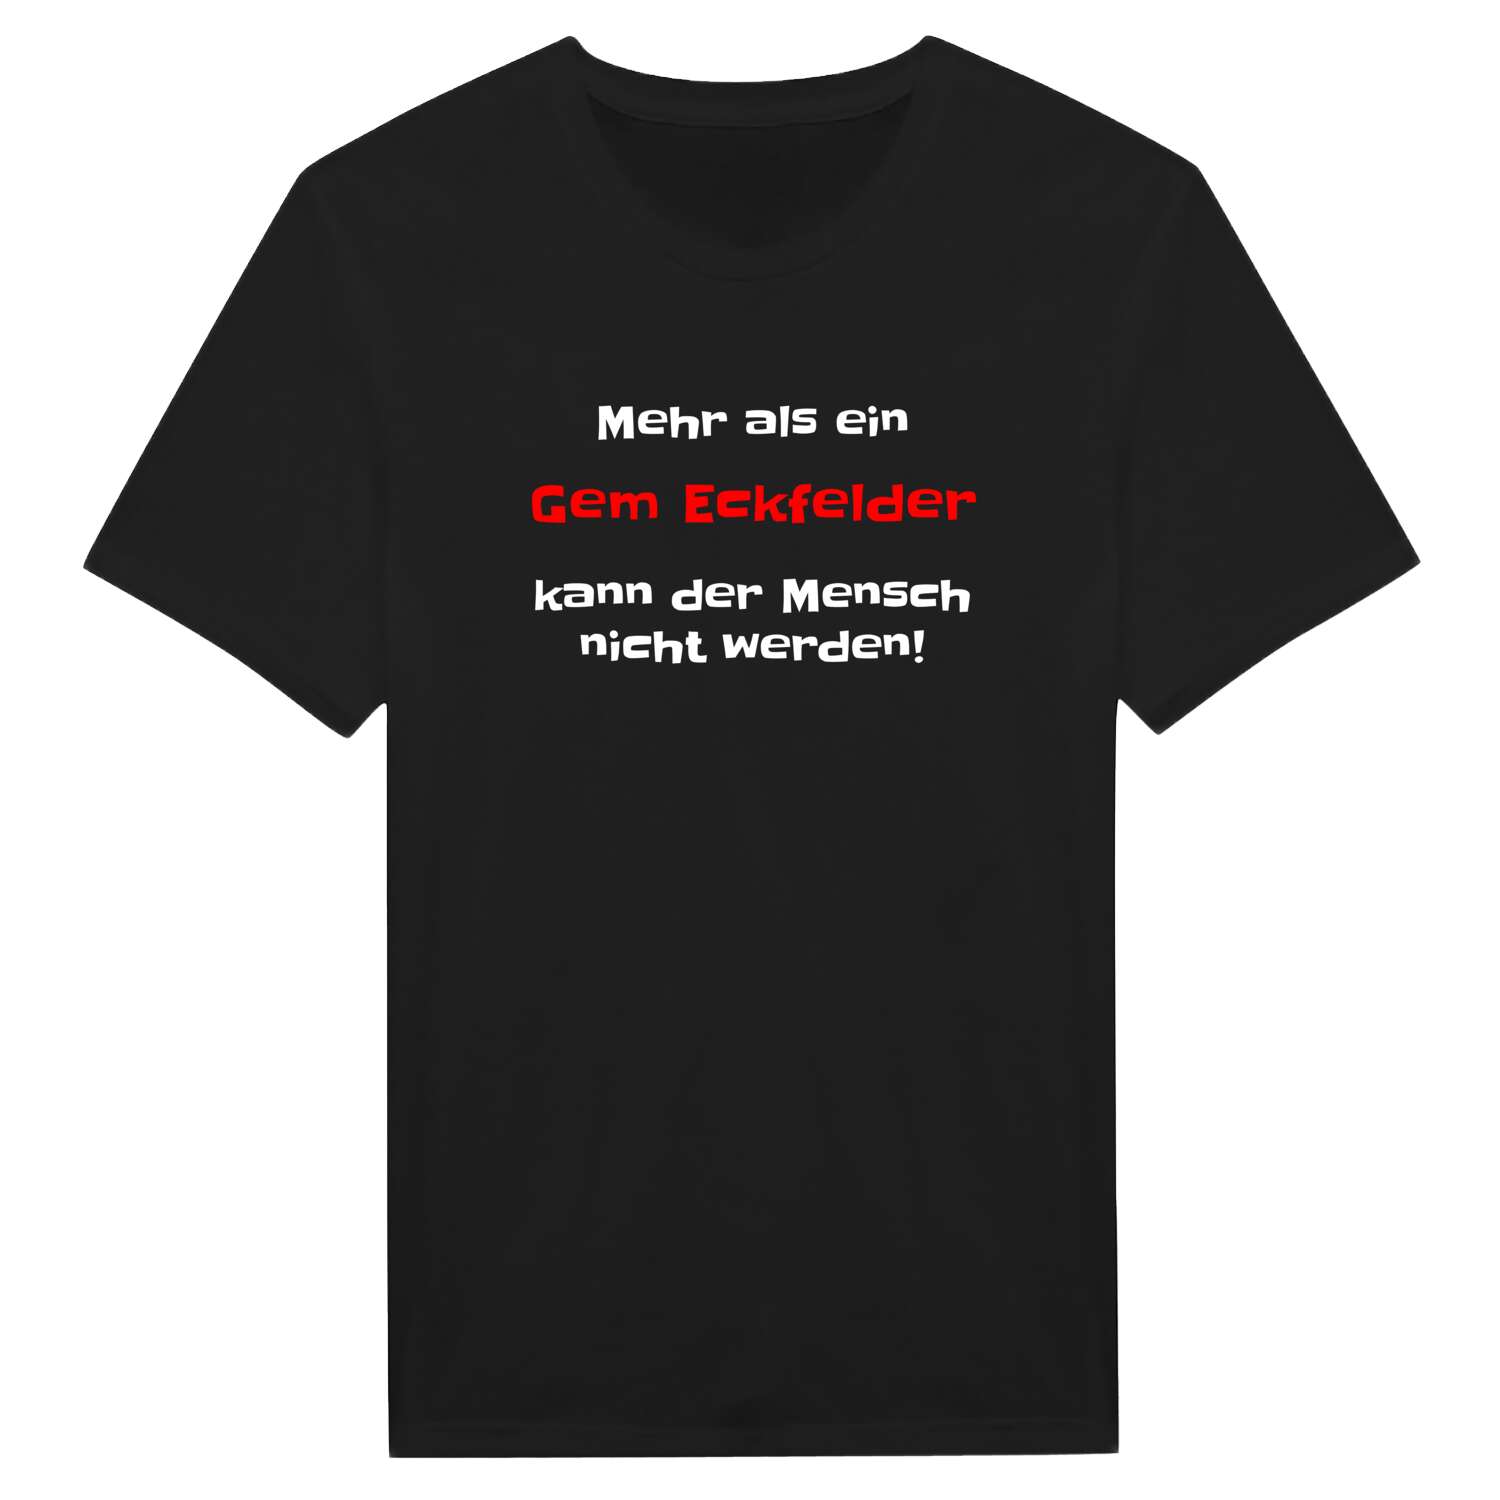 Gem Eckfeld T-Shirt »Mehr als ein«